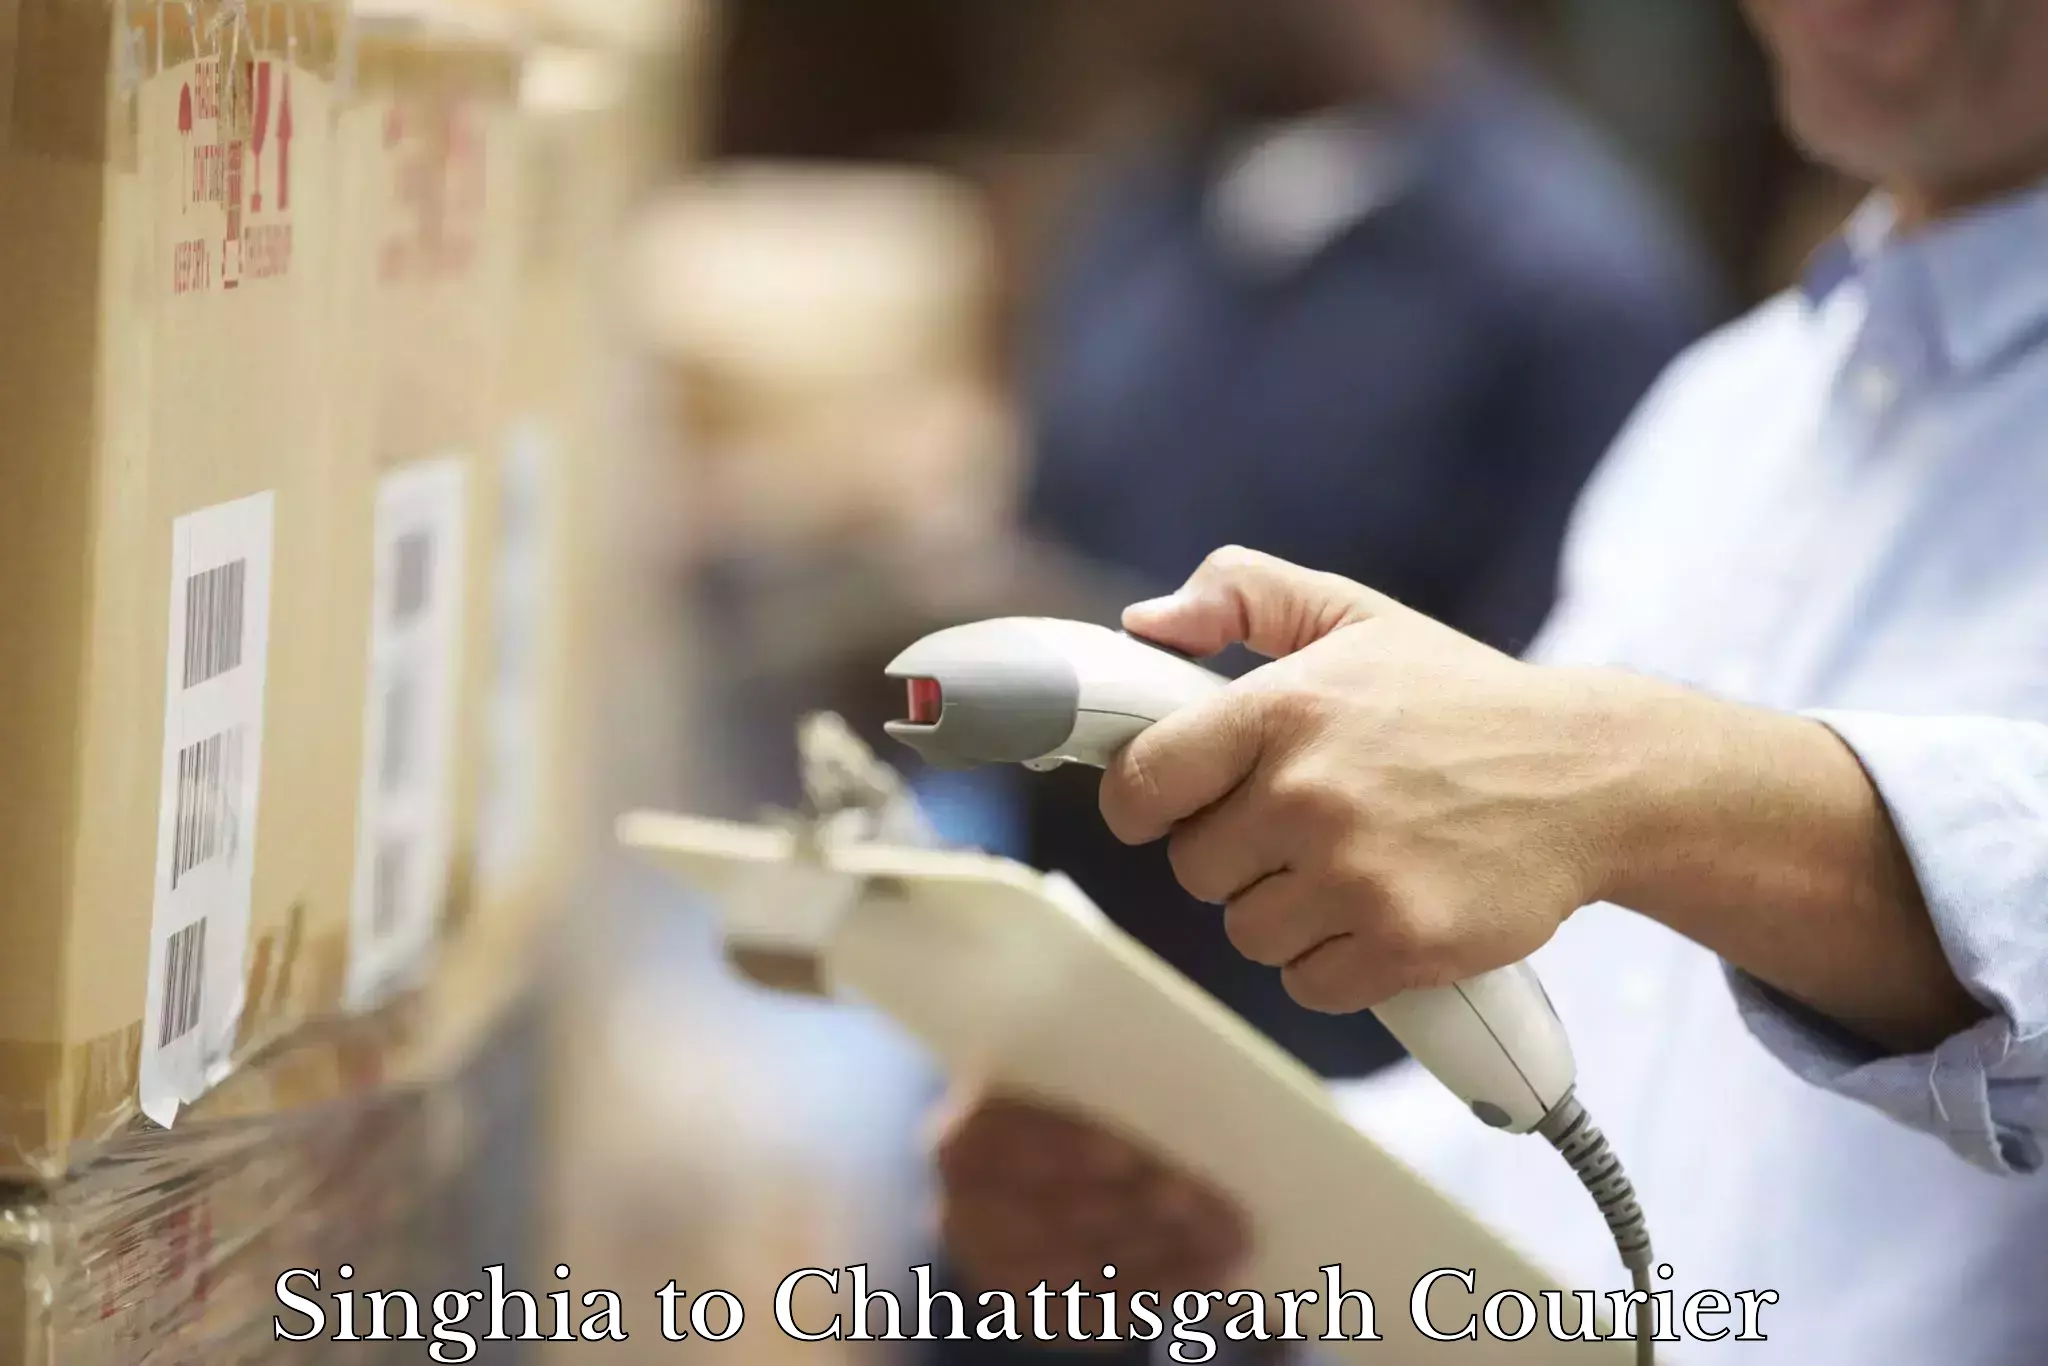 Global shipping networks Singhia to Chhattisgarh